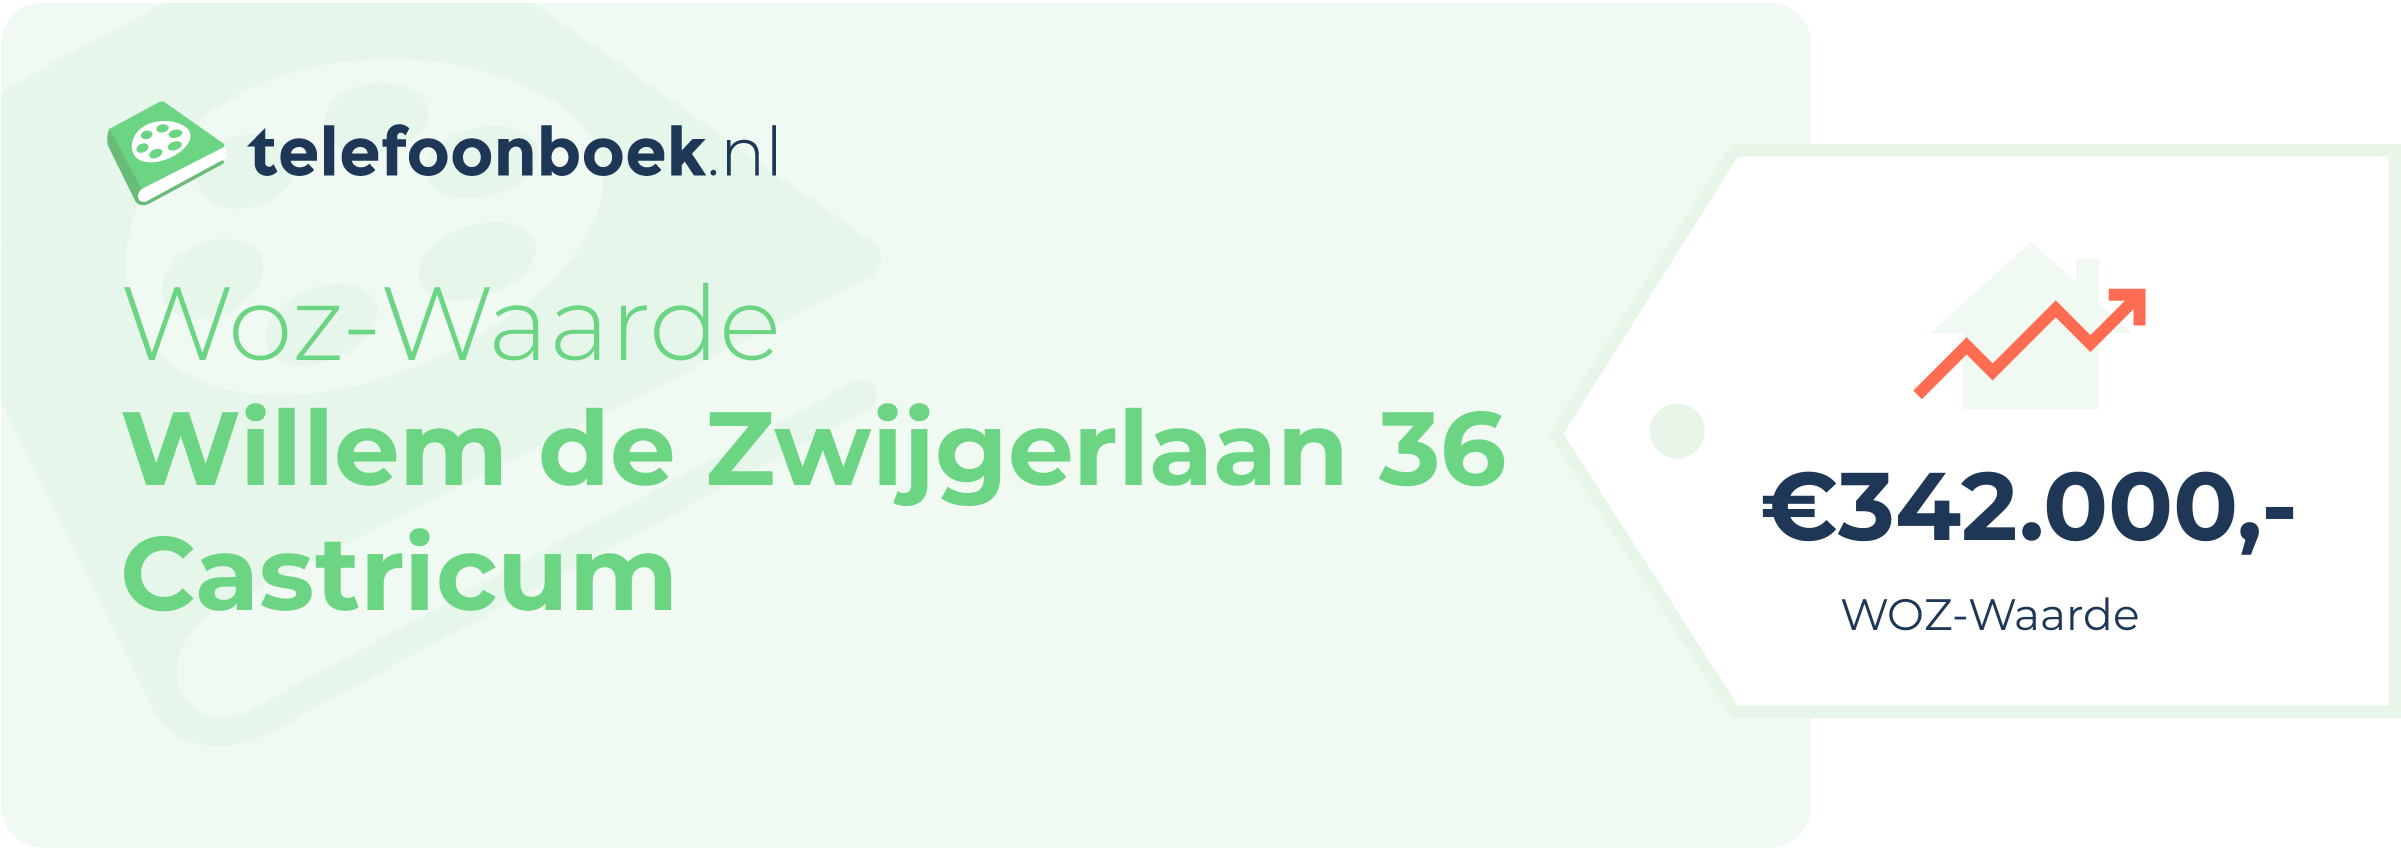 WOZ-waarde Willem De Zwijgerlaan 36 Castricum